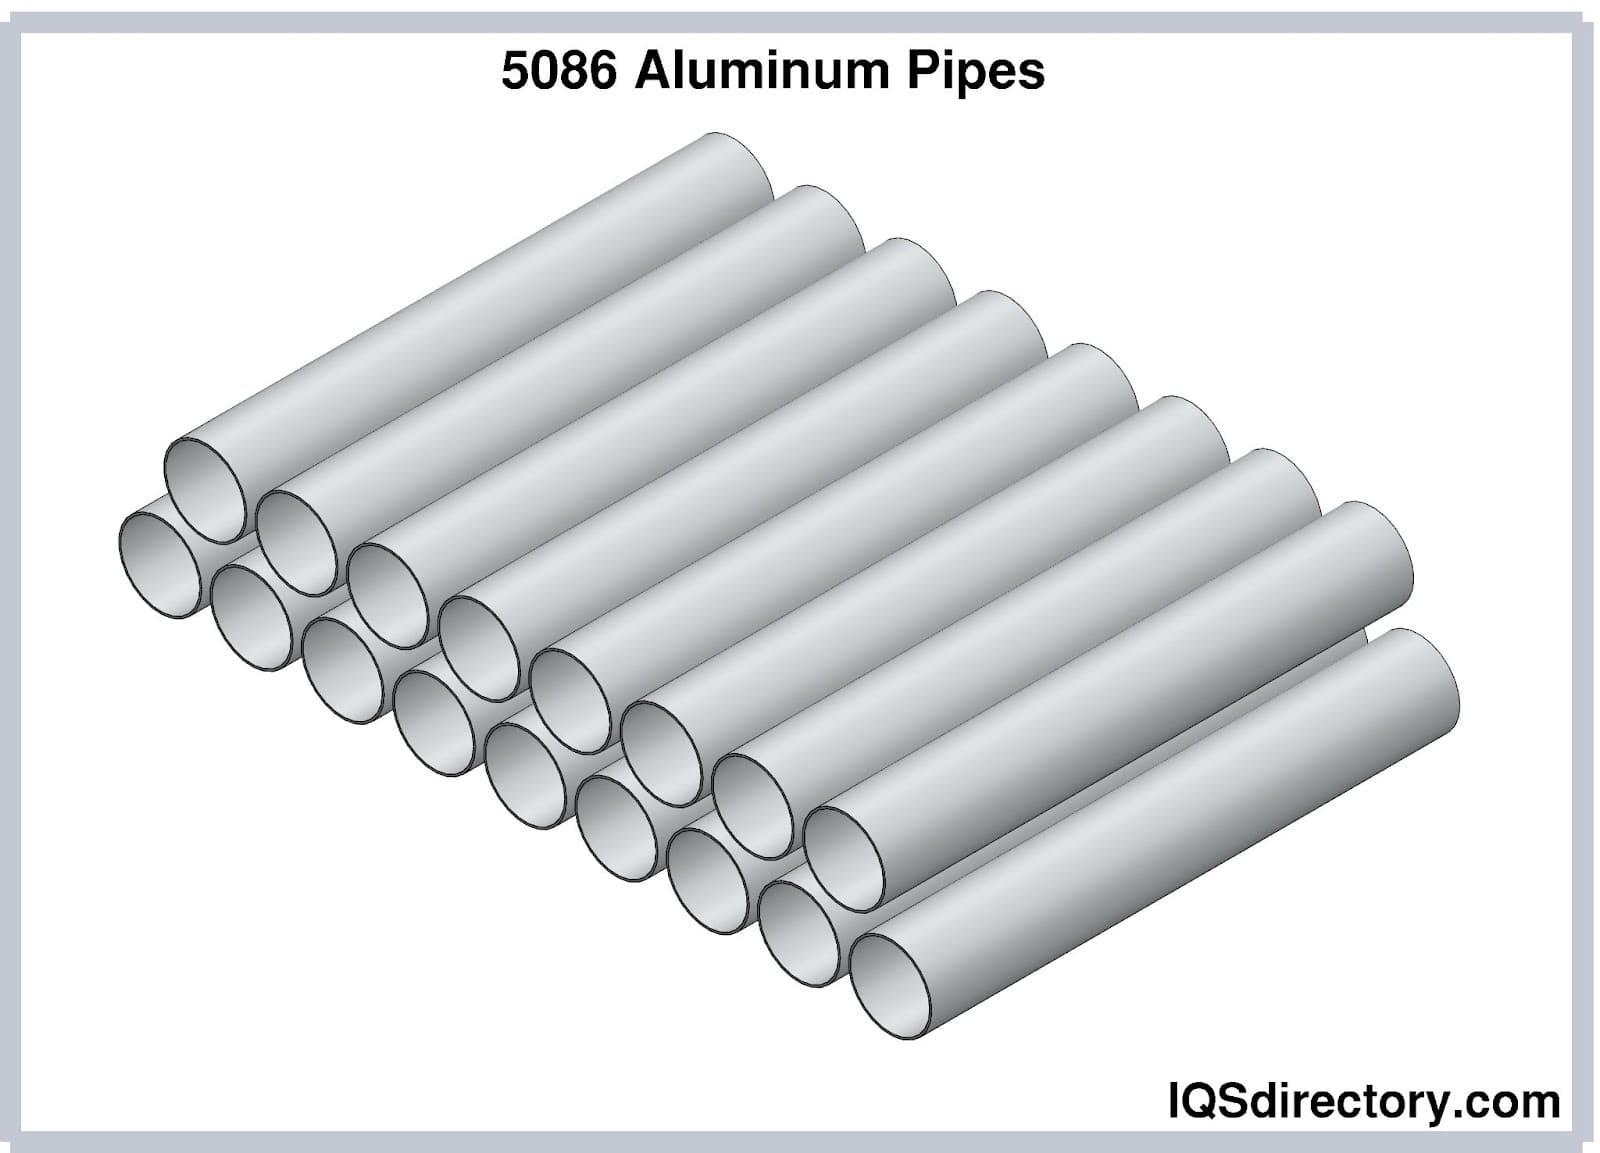 5086 Aluminum Pipes